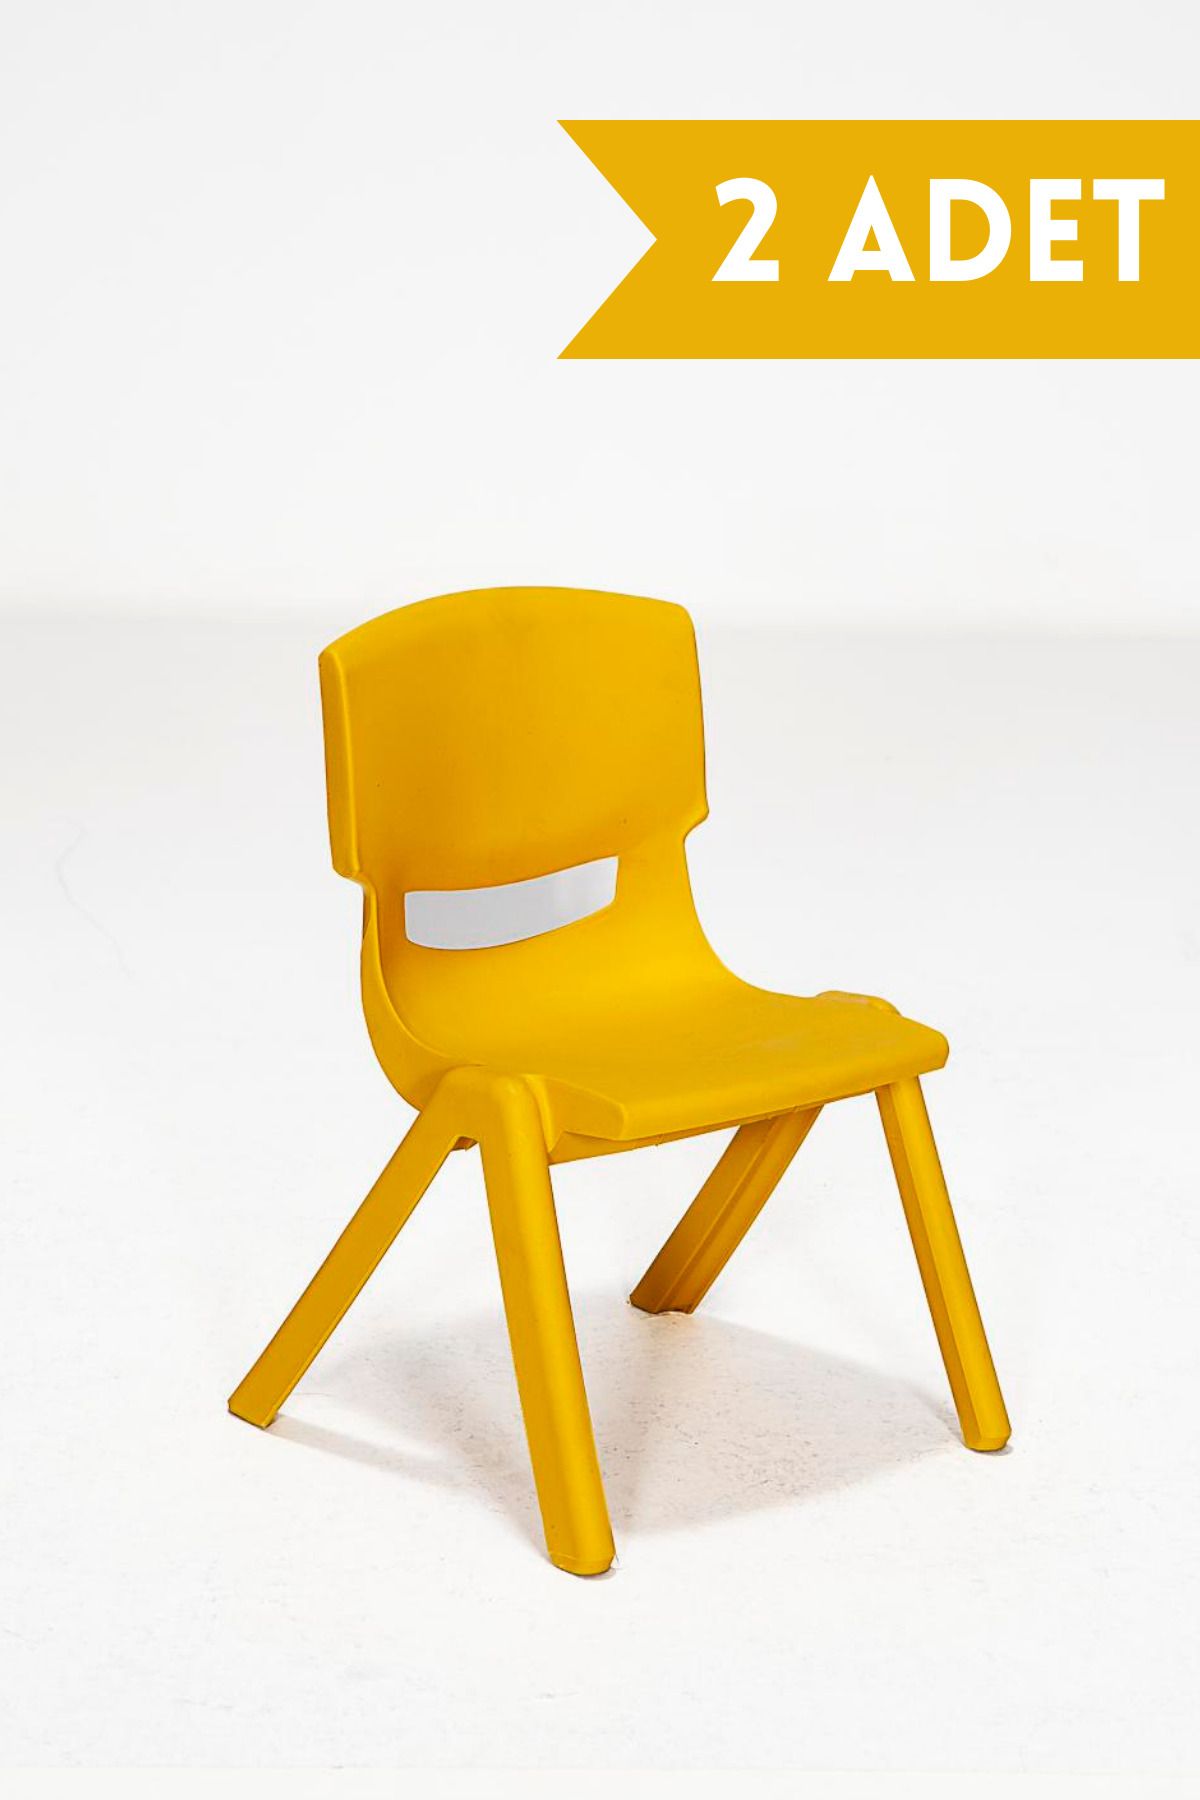 MOBETTO 2 Adet Kreş Anaokulu Çocuk Sandalyesi Sert Plastik- Sarı